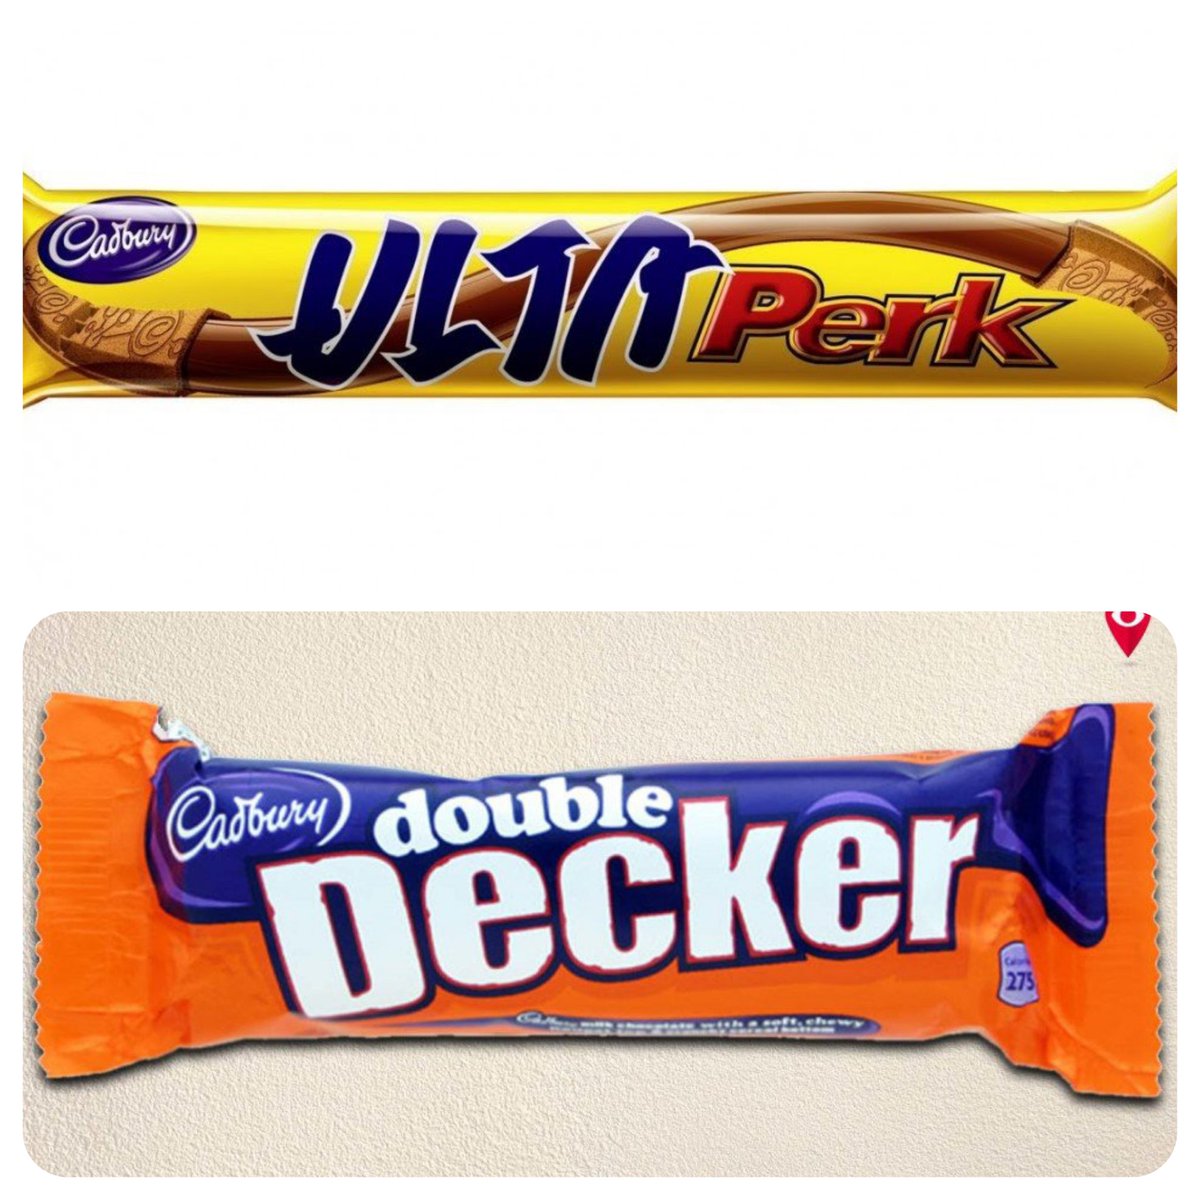 Cadburys ~Ulta perk and Double decker..